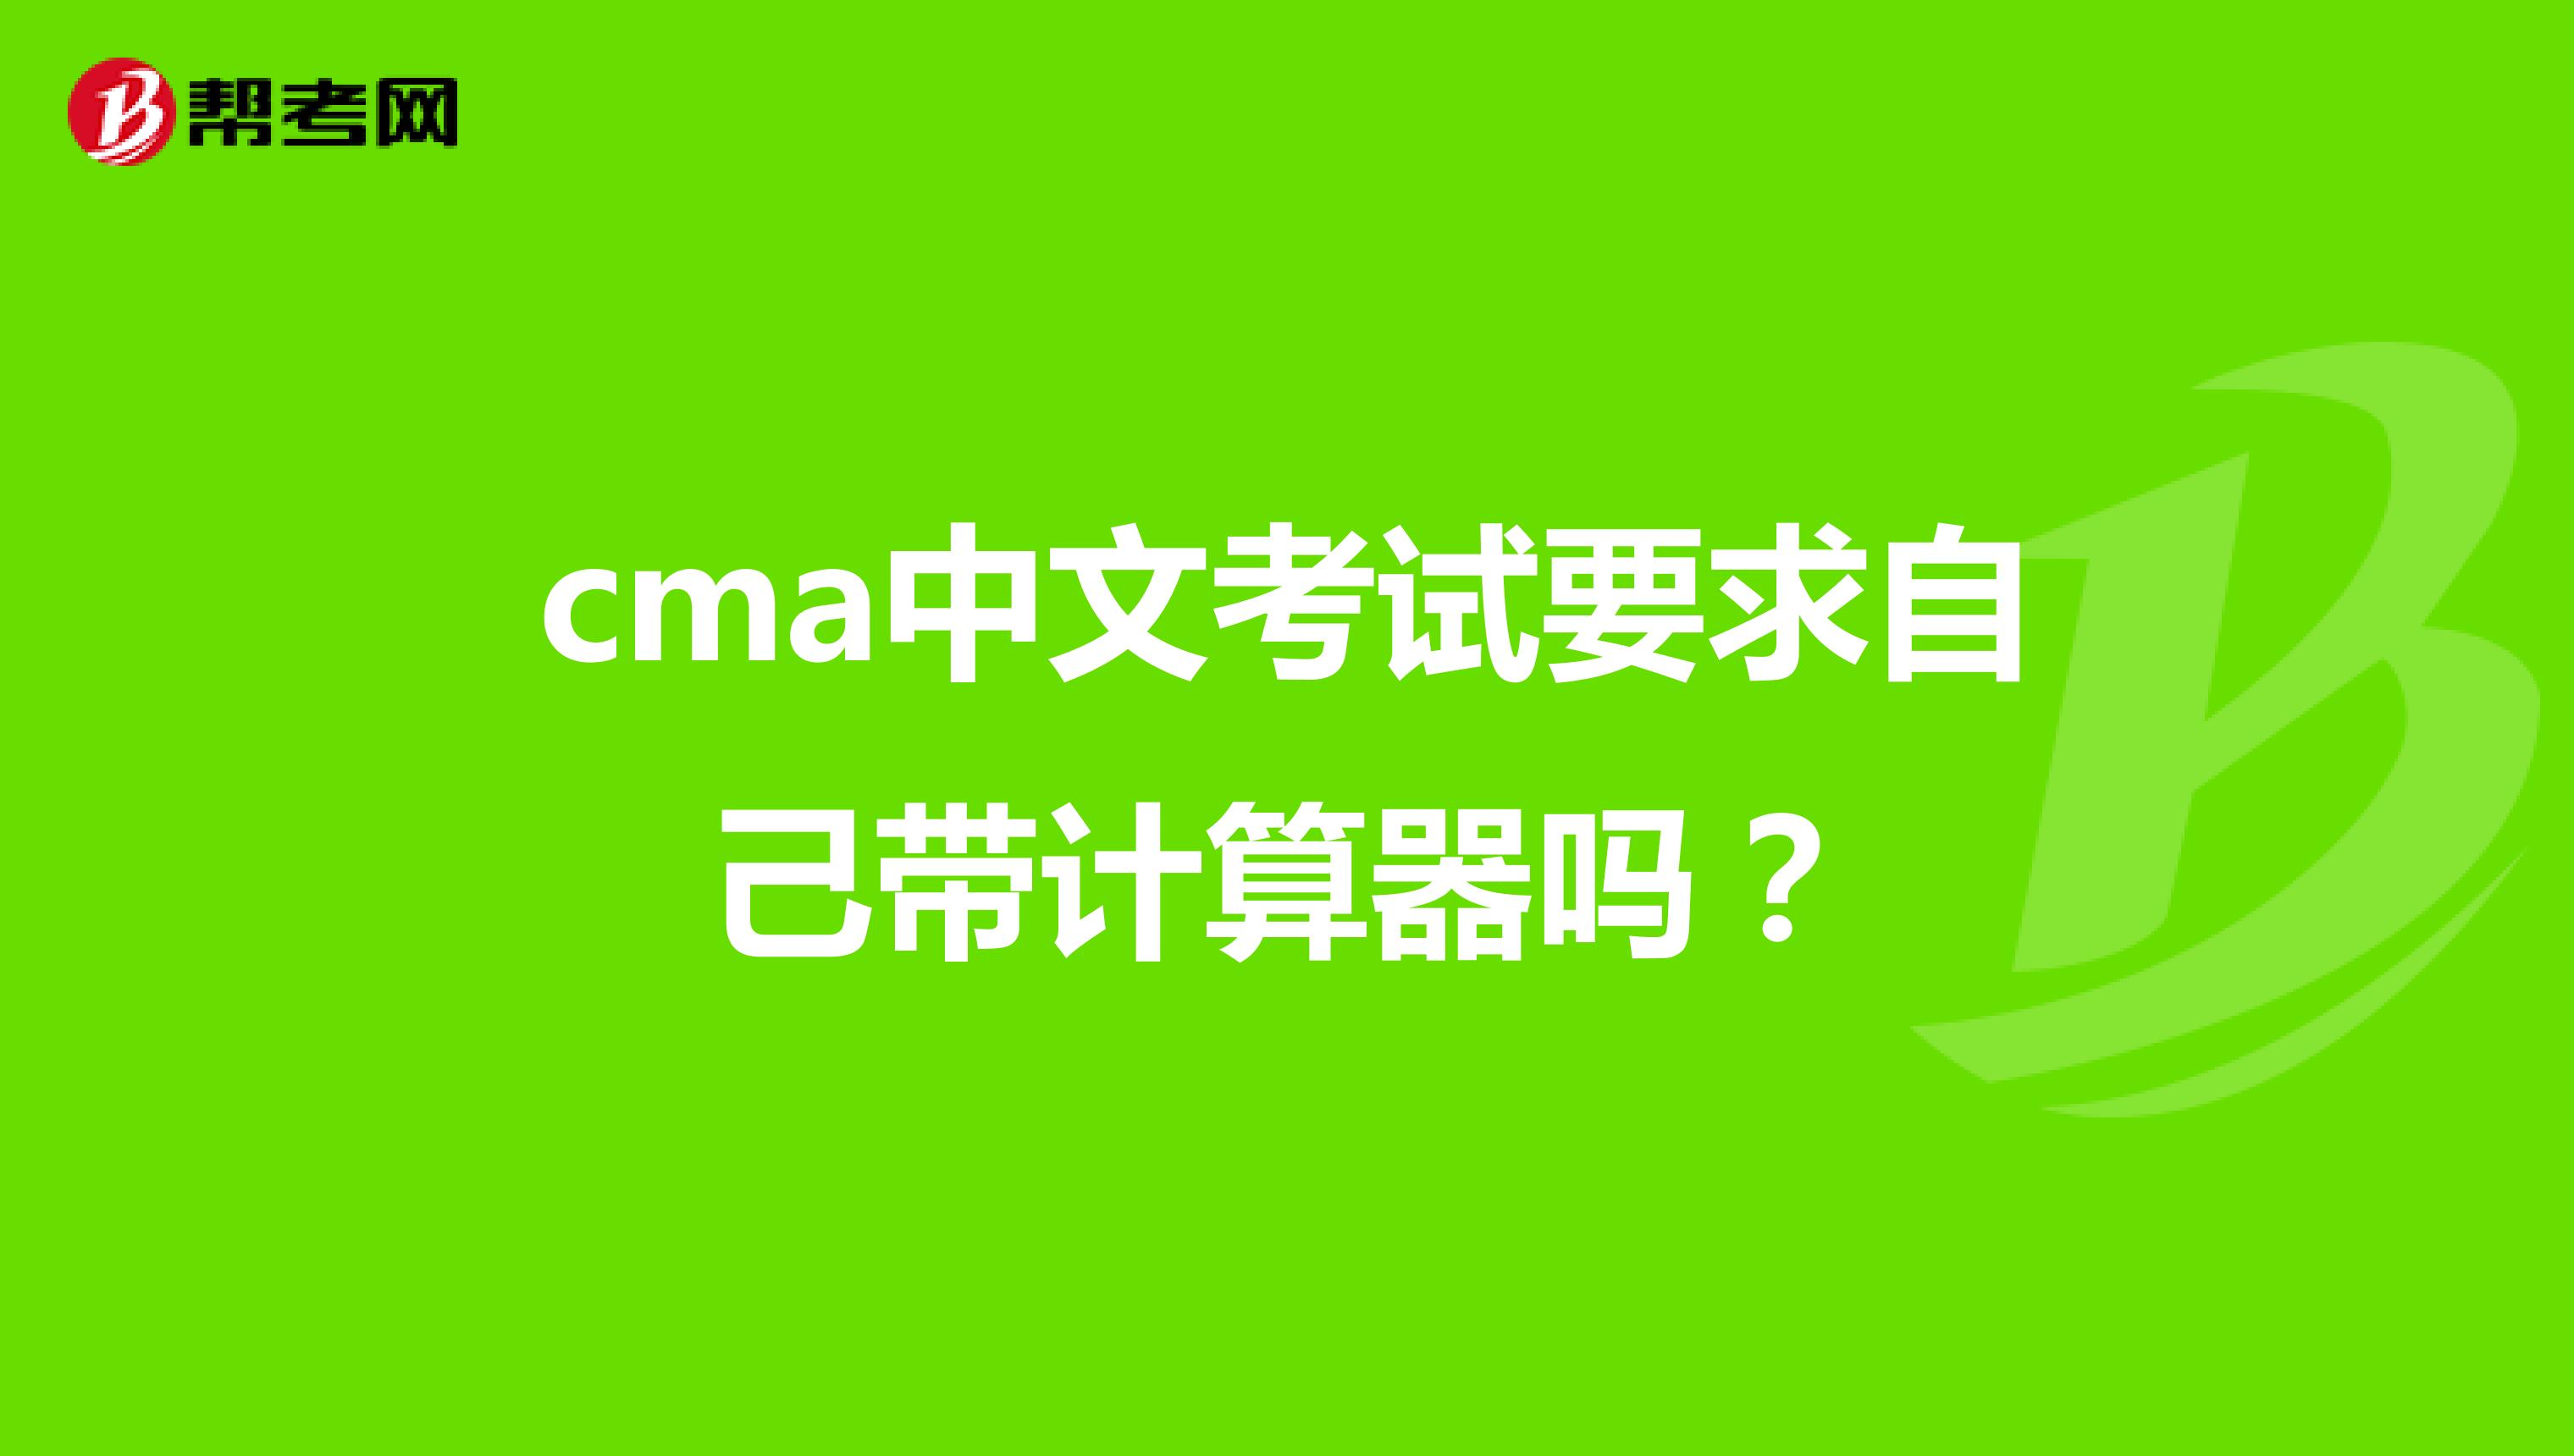 cma中文考试要求自己带计算器吗？